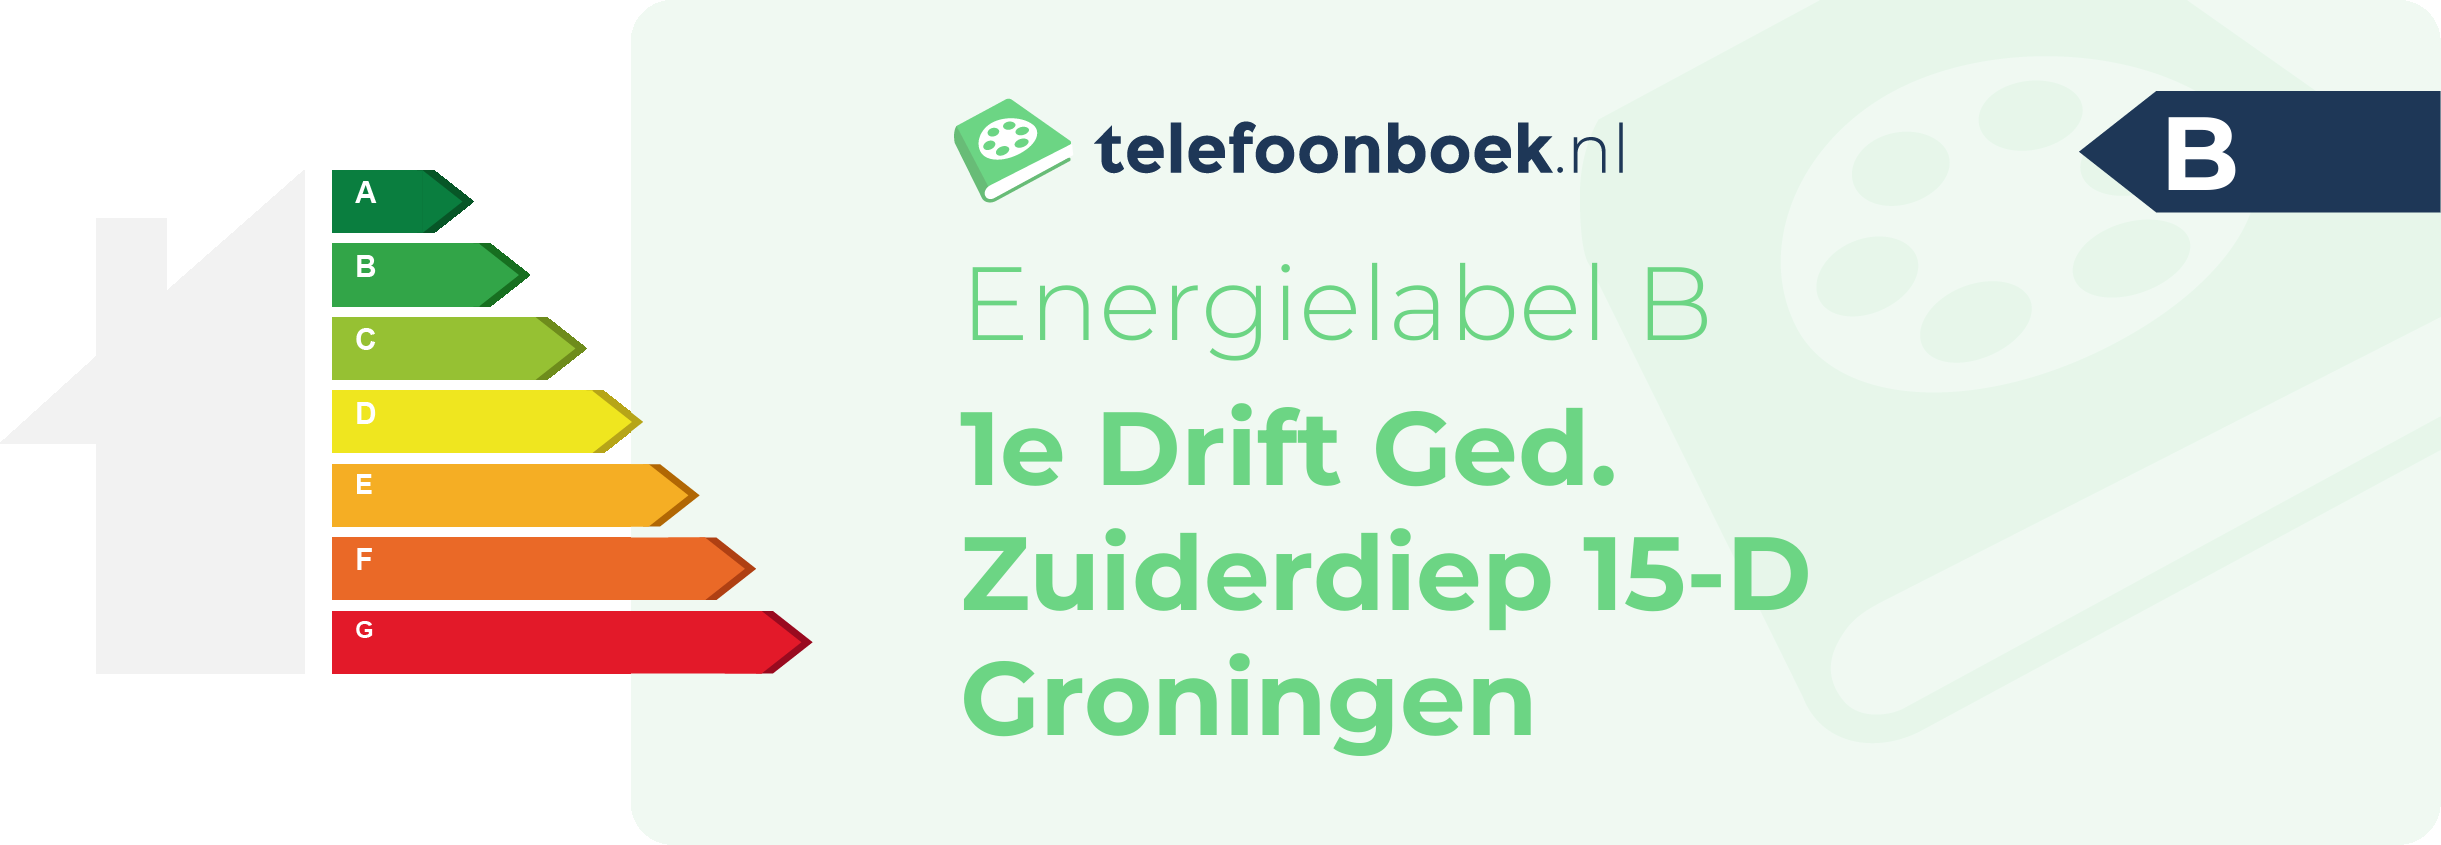 Energielabel 1e Drift Ged. Zuiderdiep 15-D Groningen